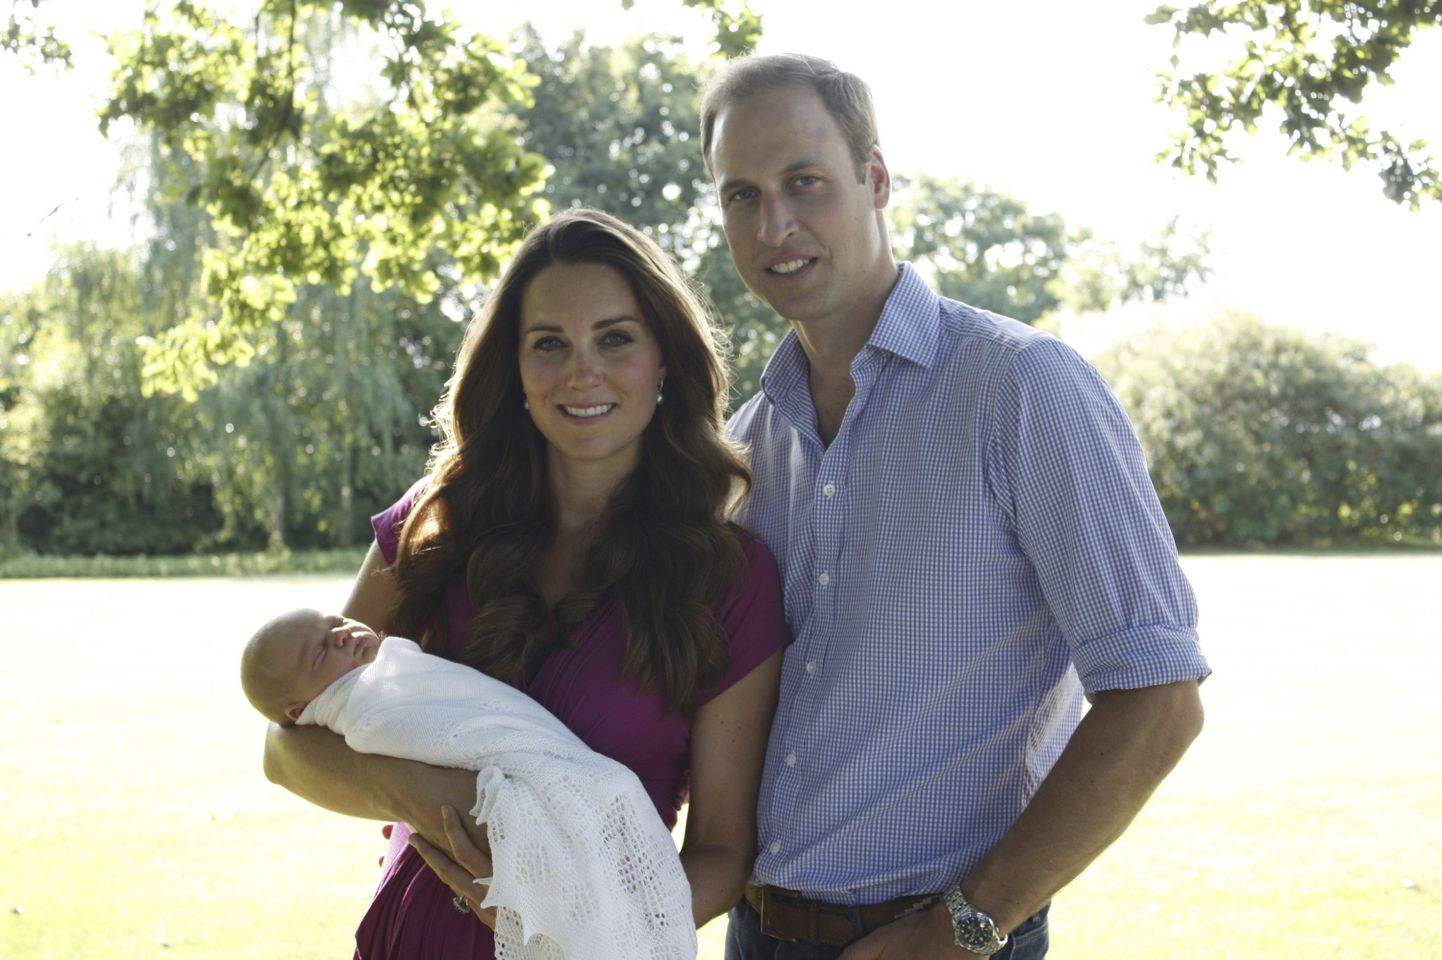 Cambridge'i hertsog ja hertsoginna koos esiklapse prints George'iga augusti alguses.